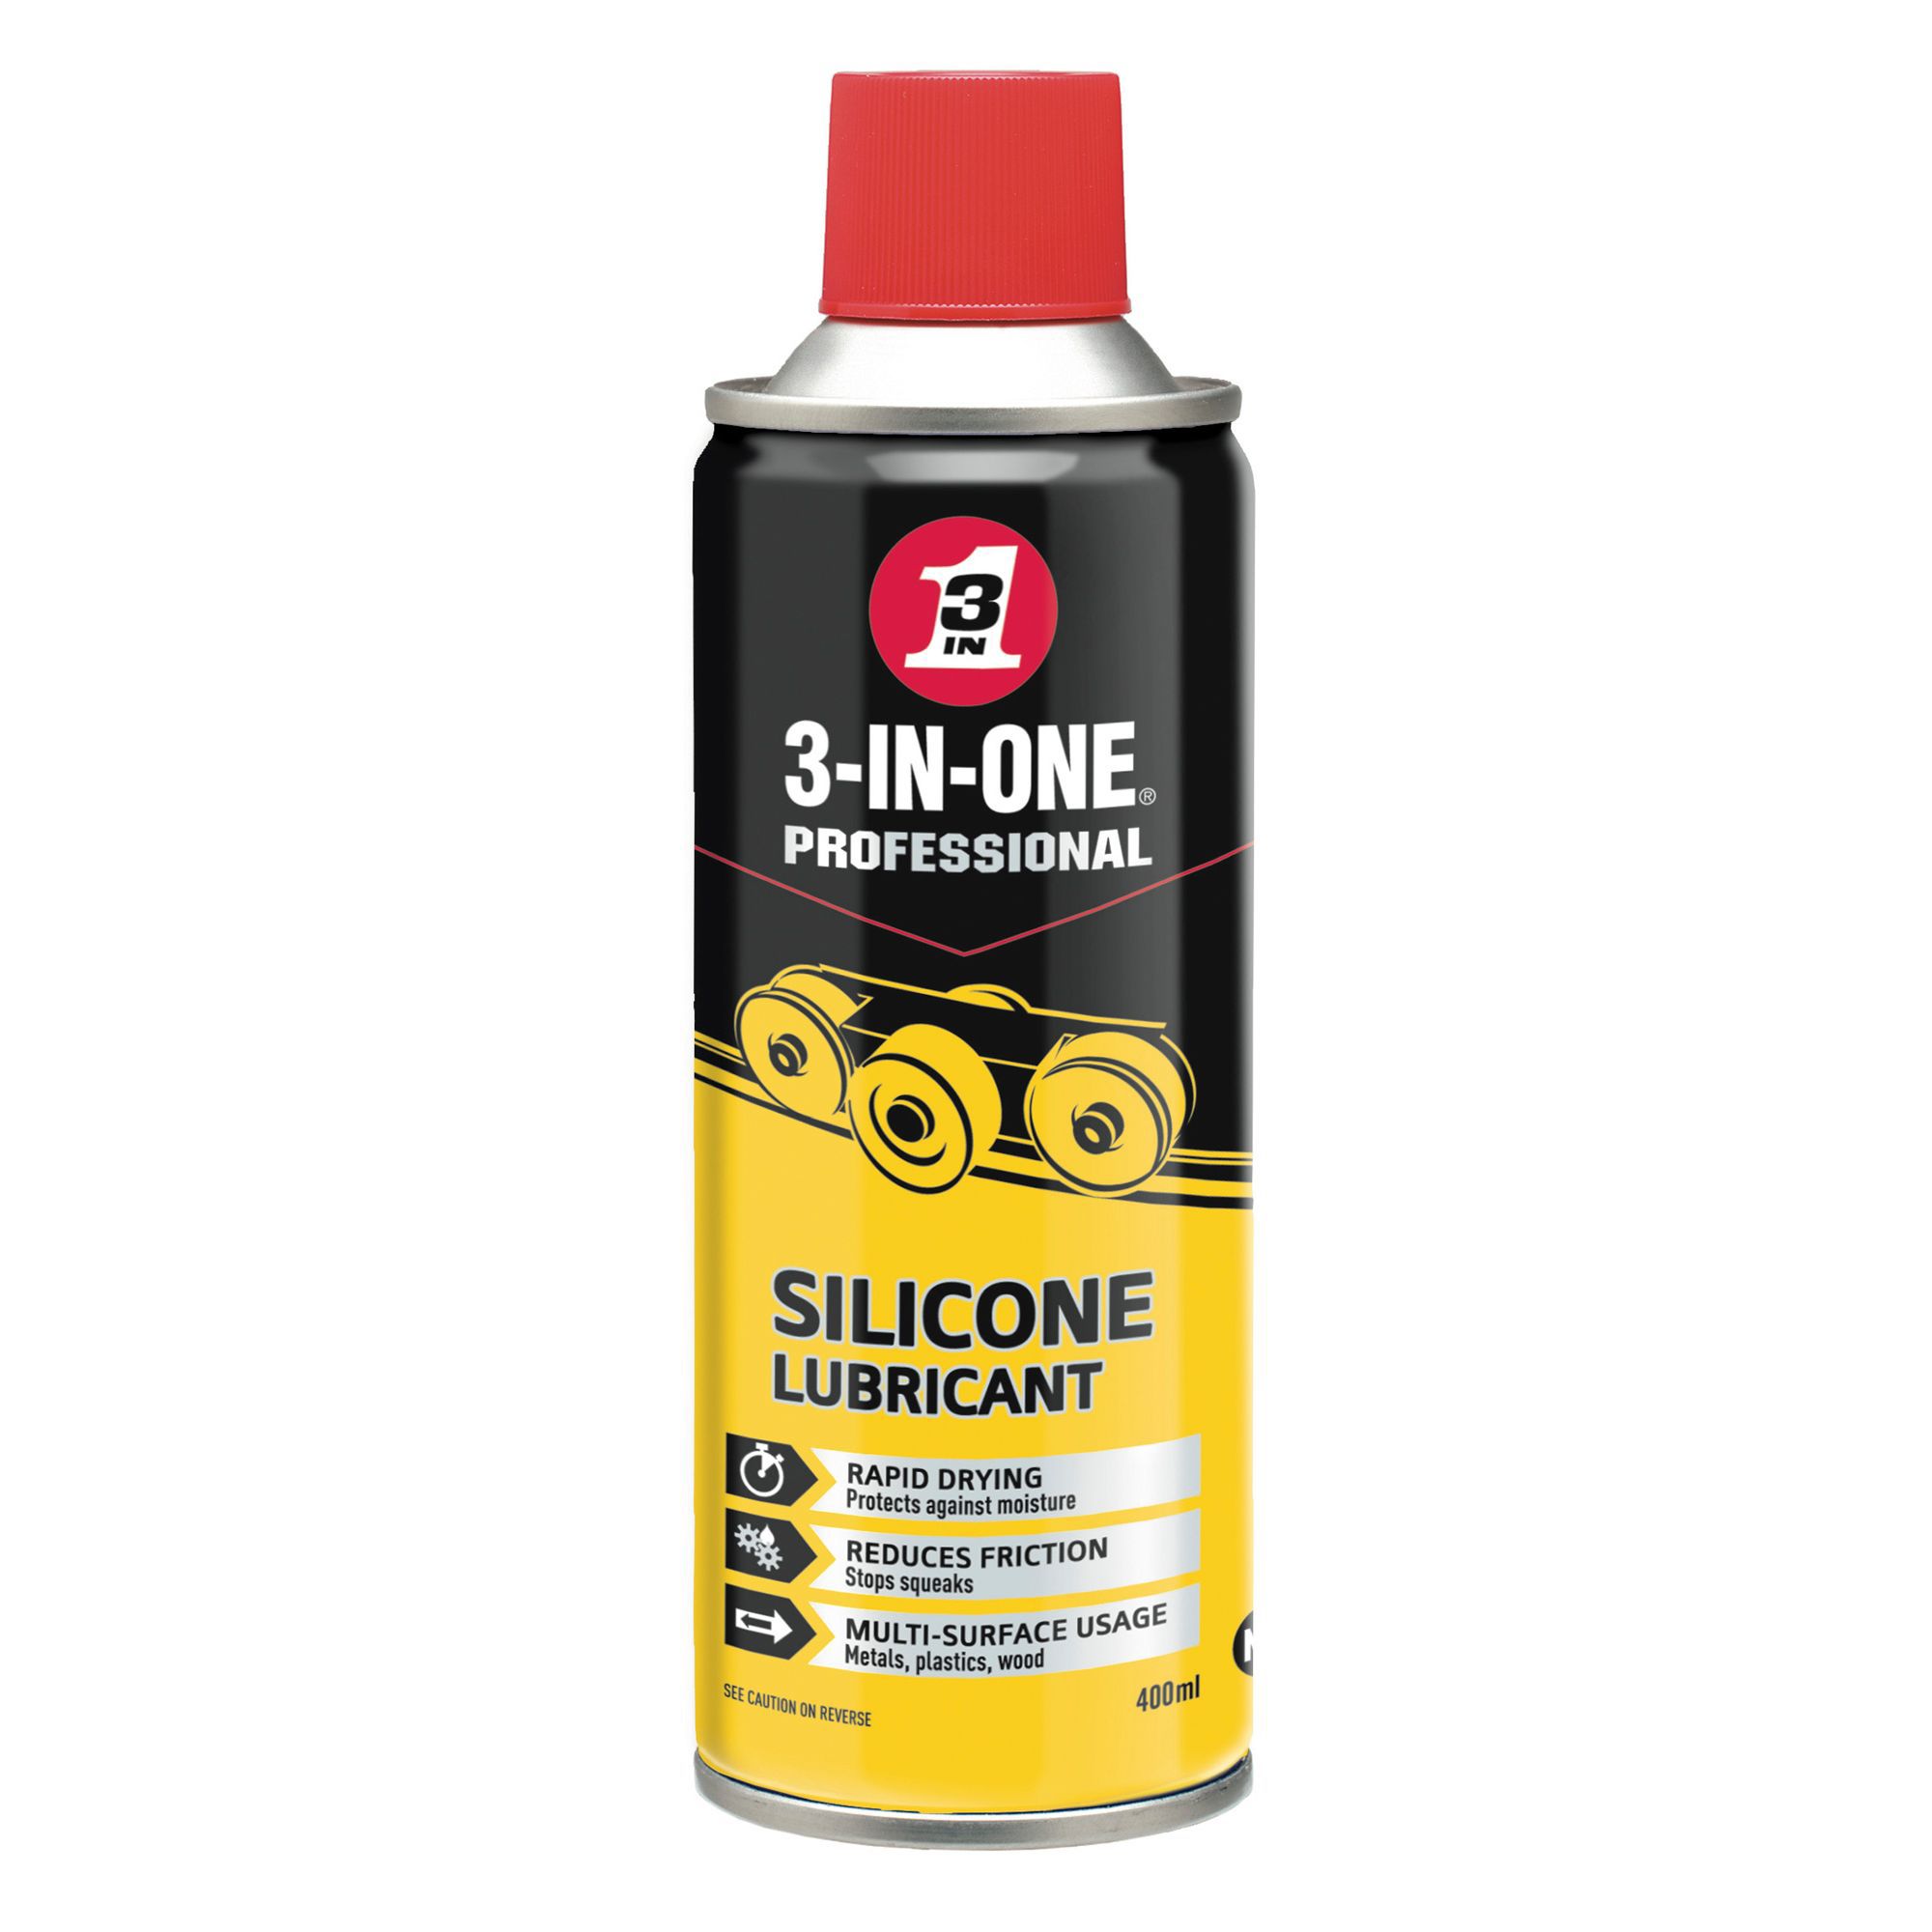 Wd 40 lubrifiant silicone 400ml | Sanifer